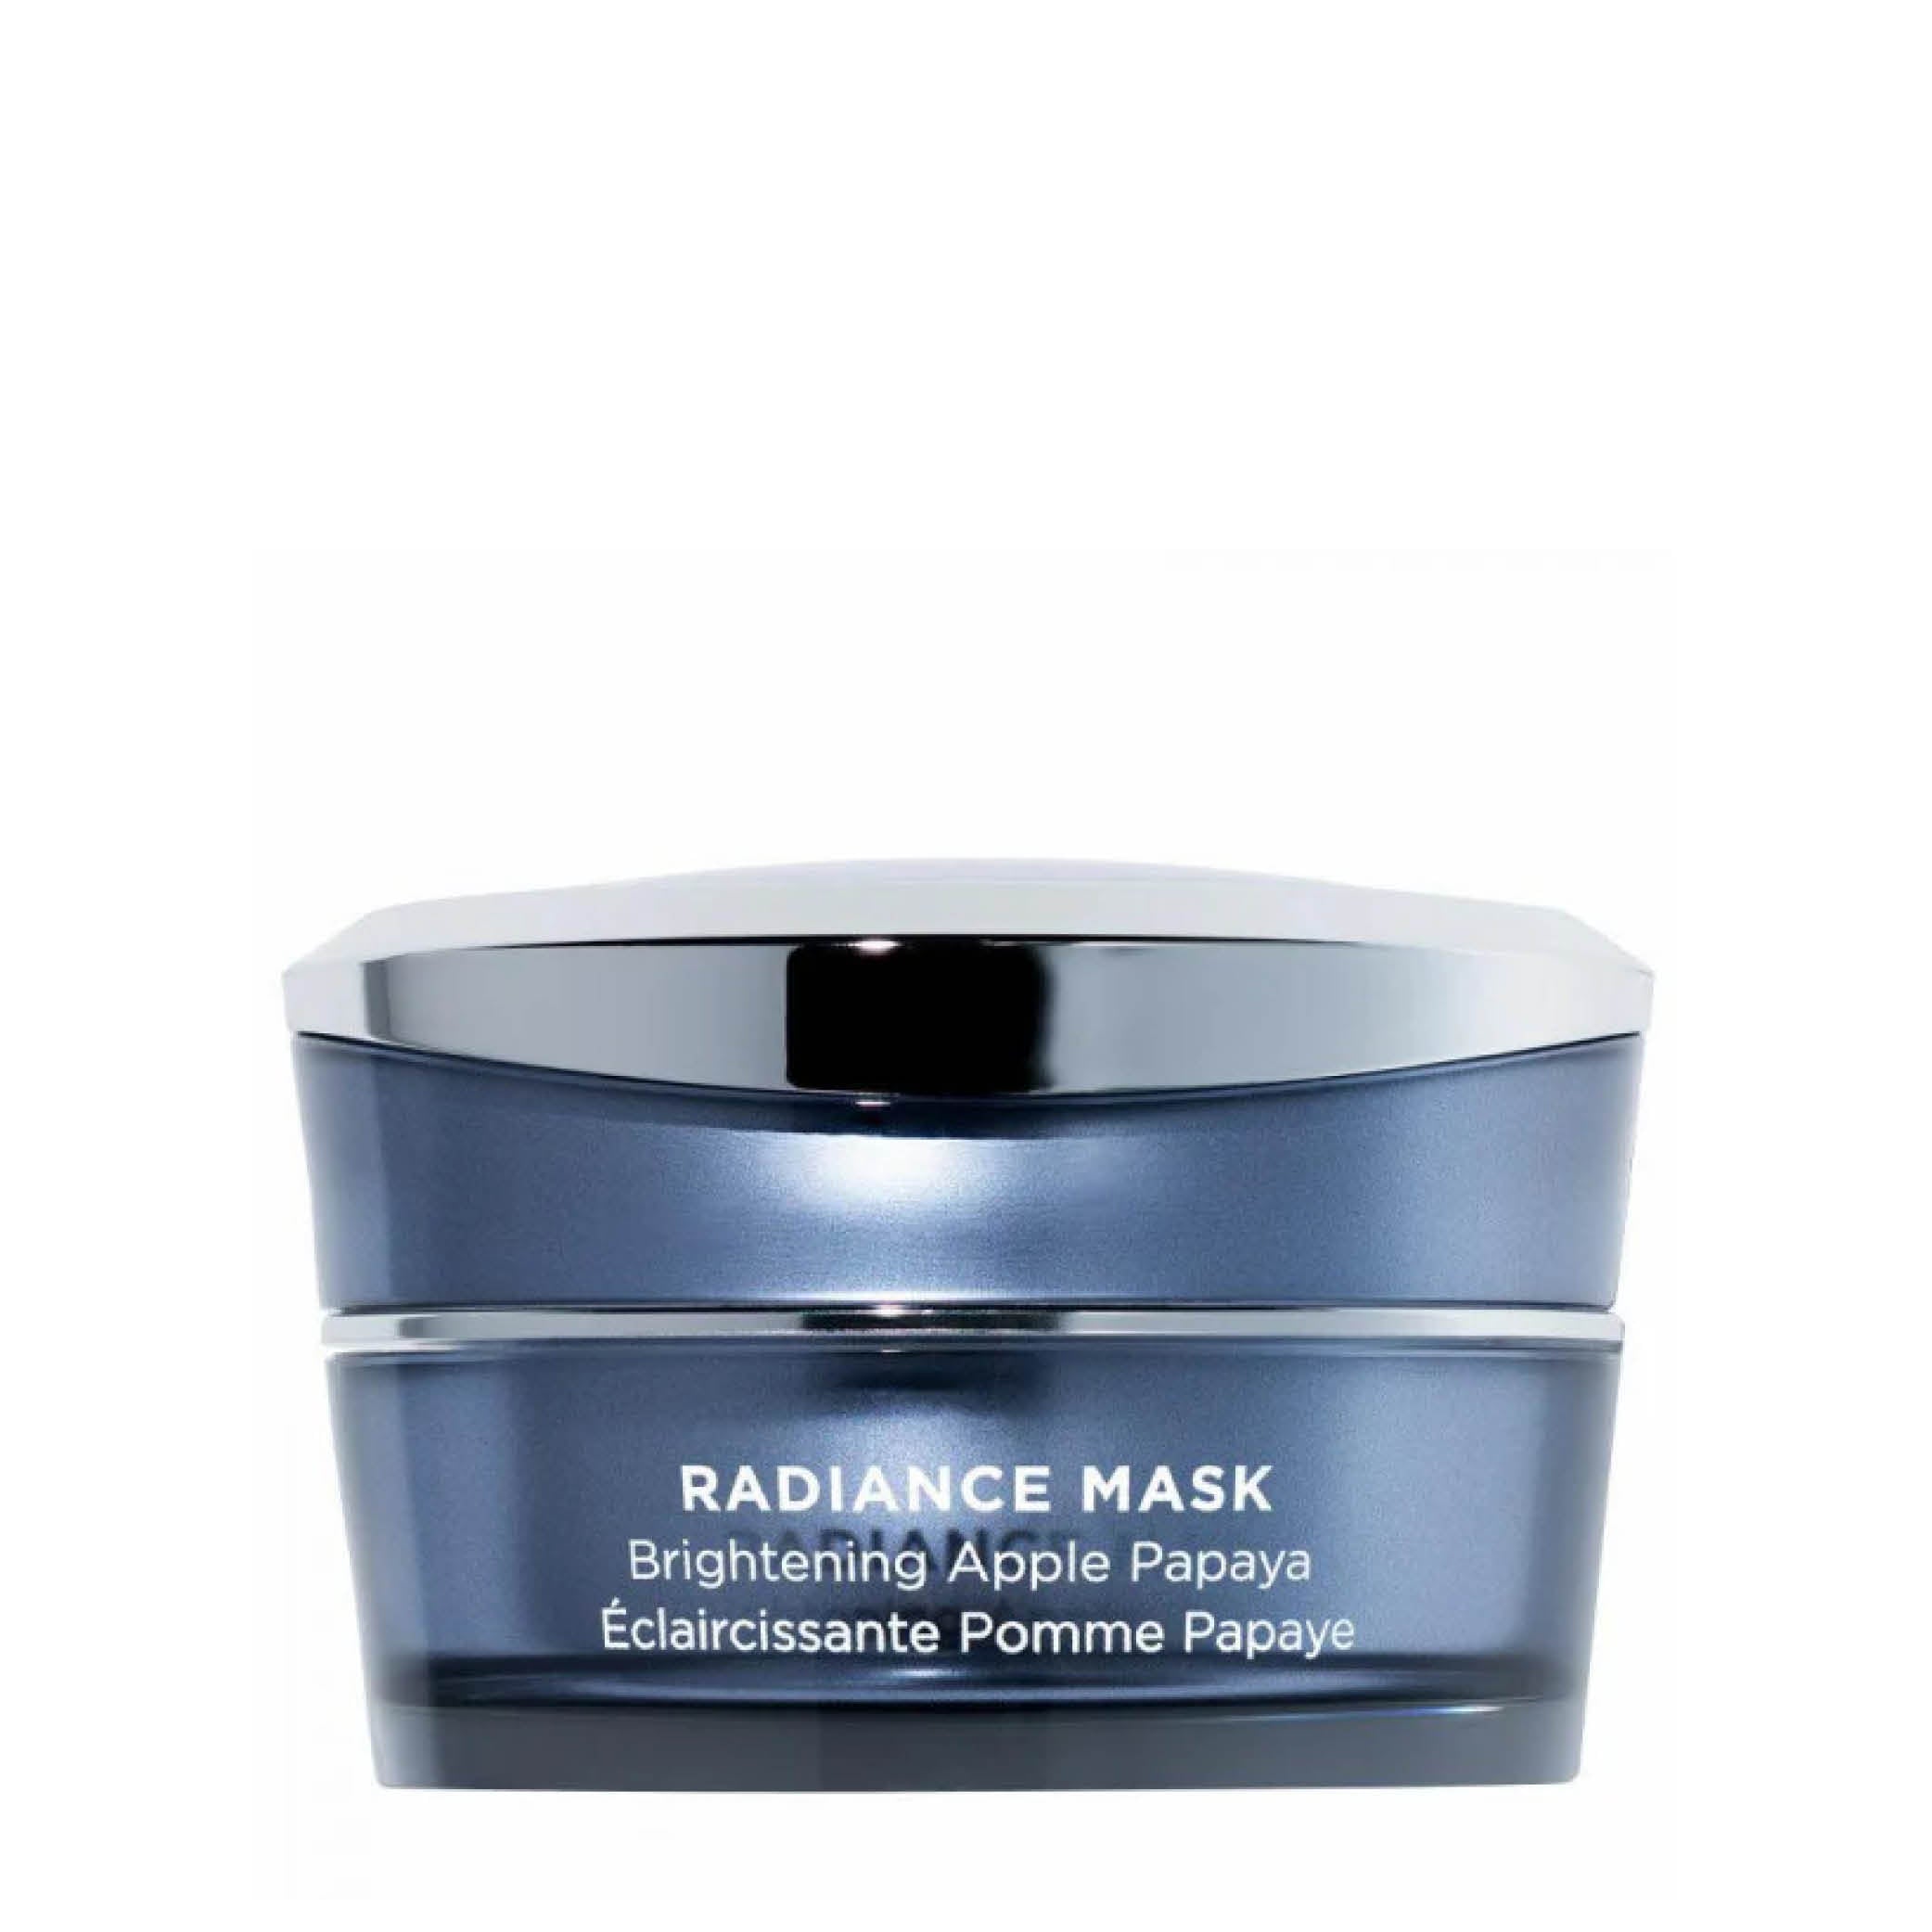 Radiance Mask